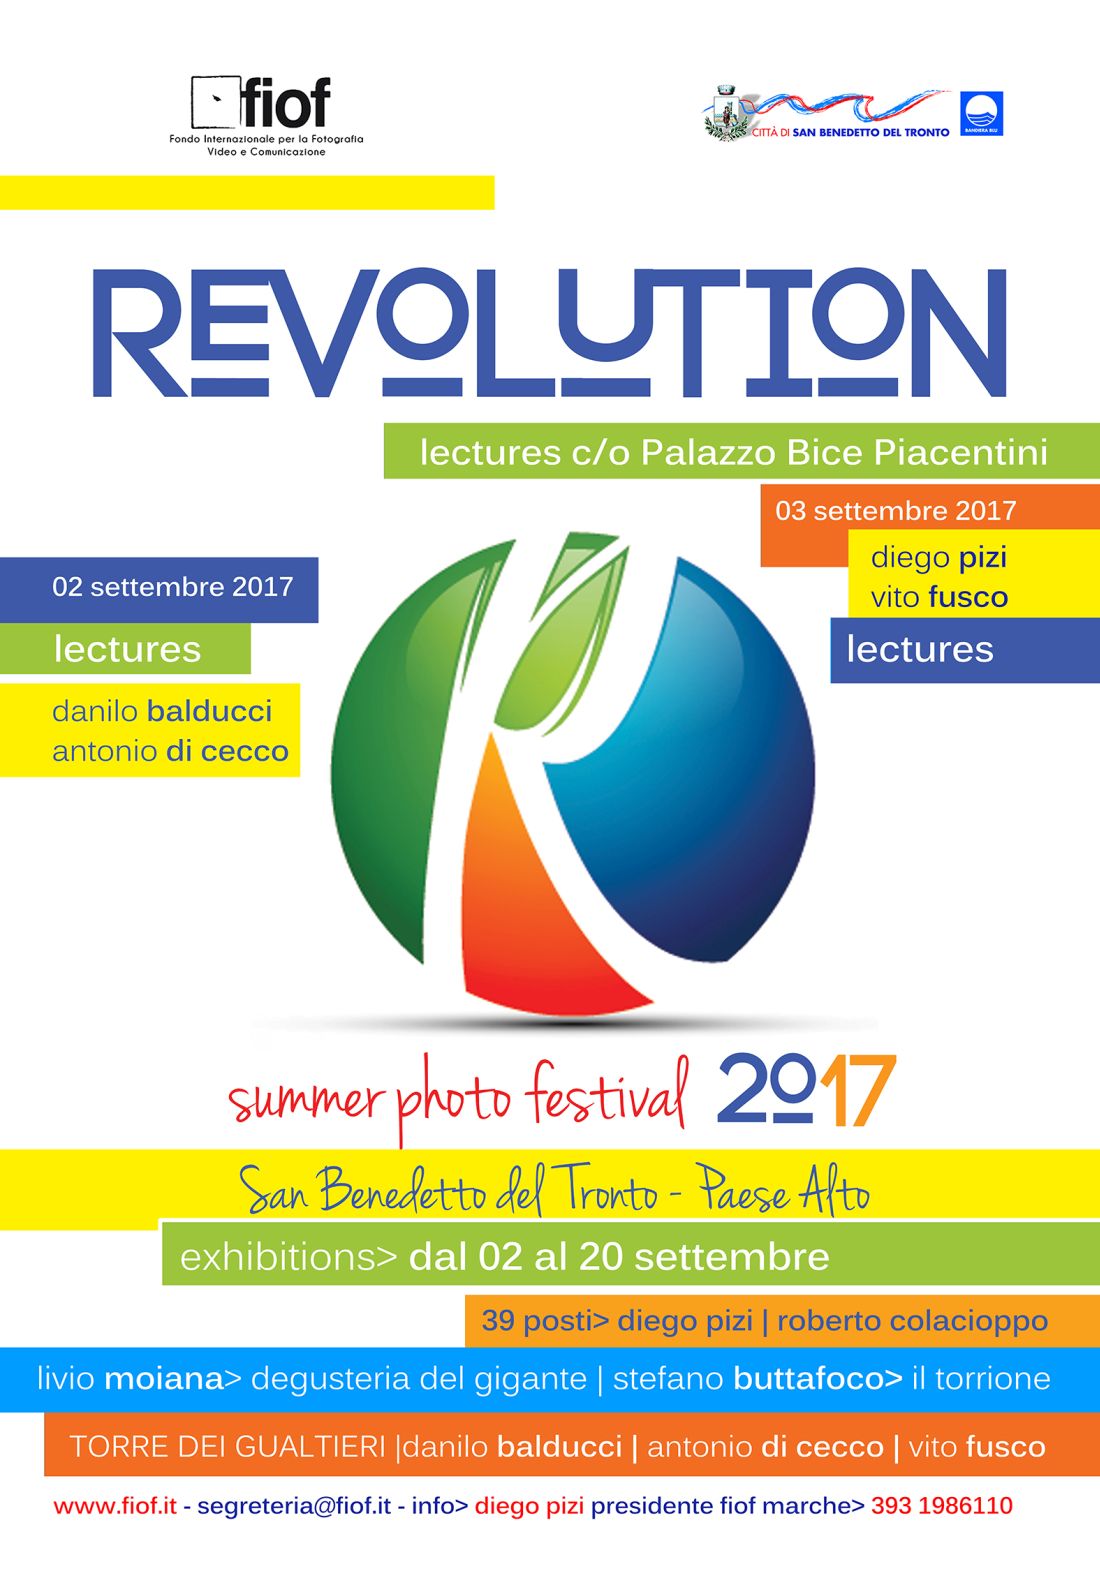 Pronti per il Fiof Revolution Summer Photo Festival 2017